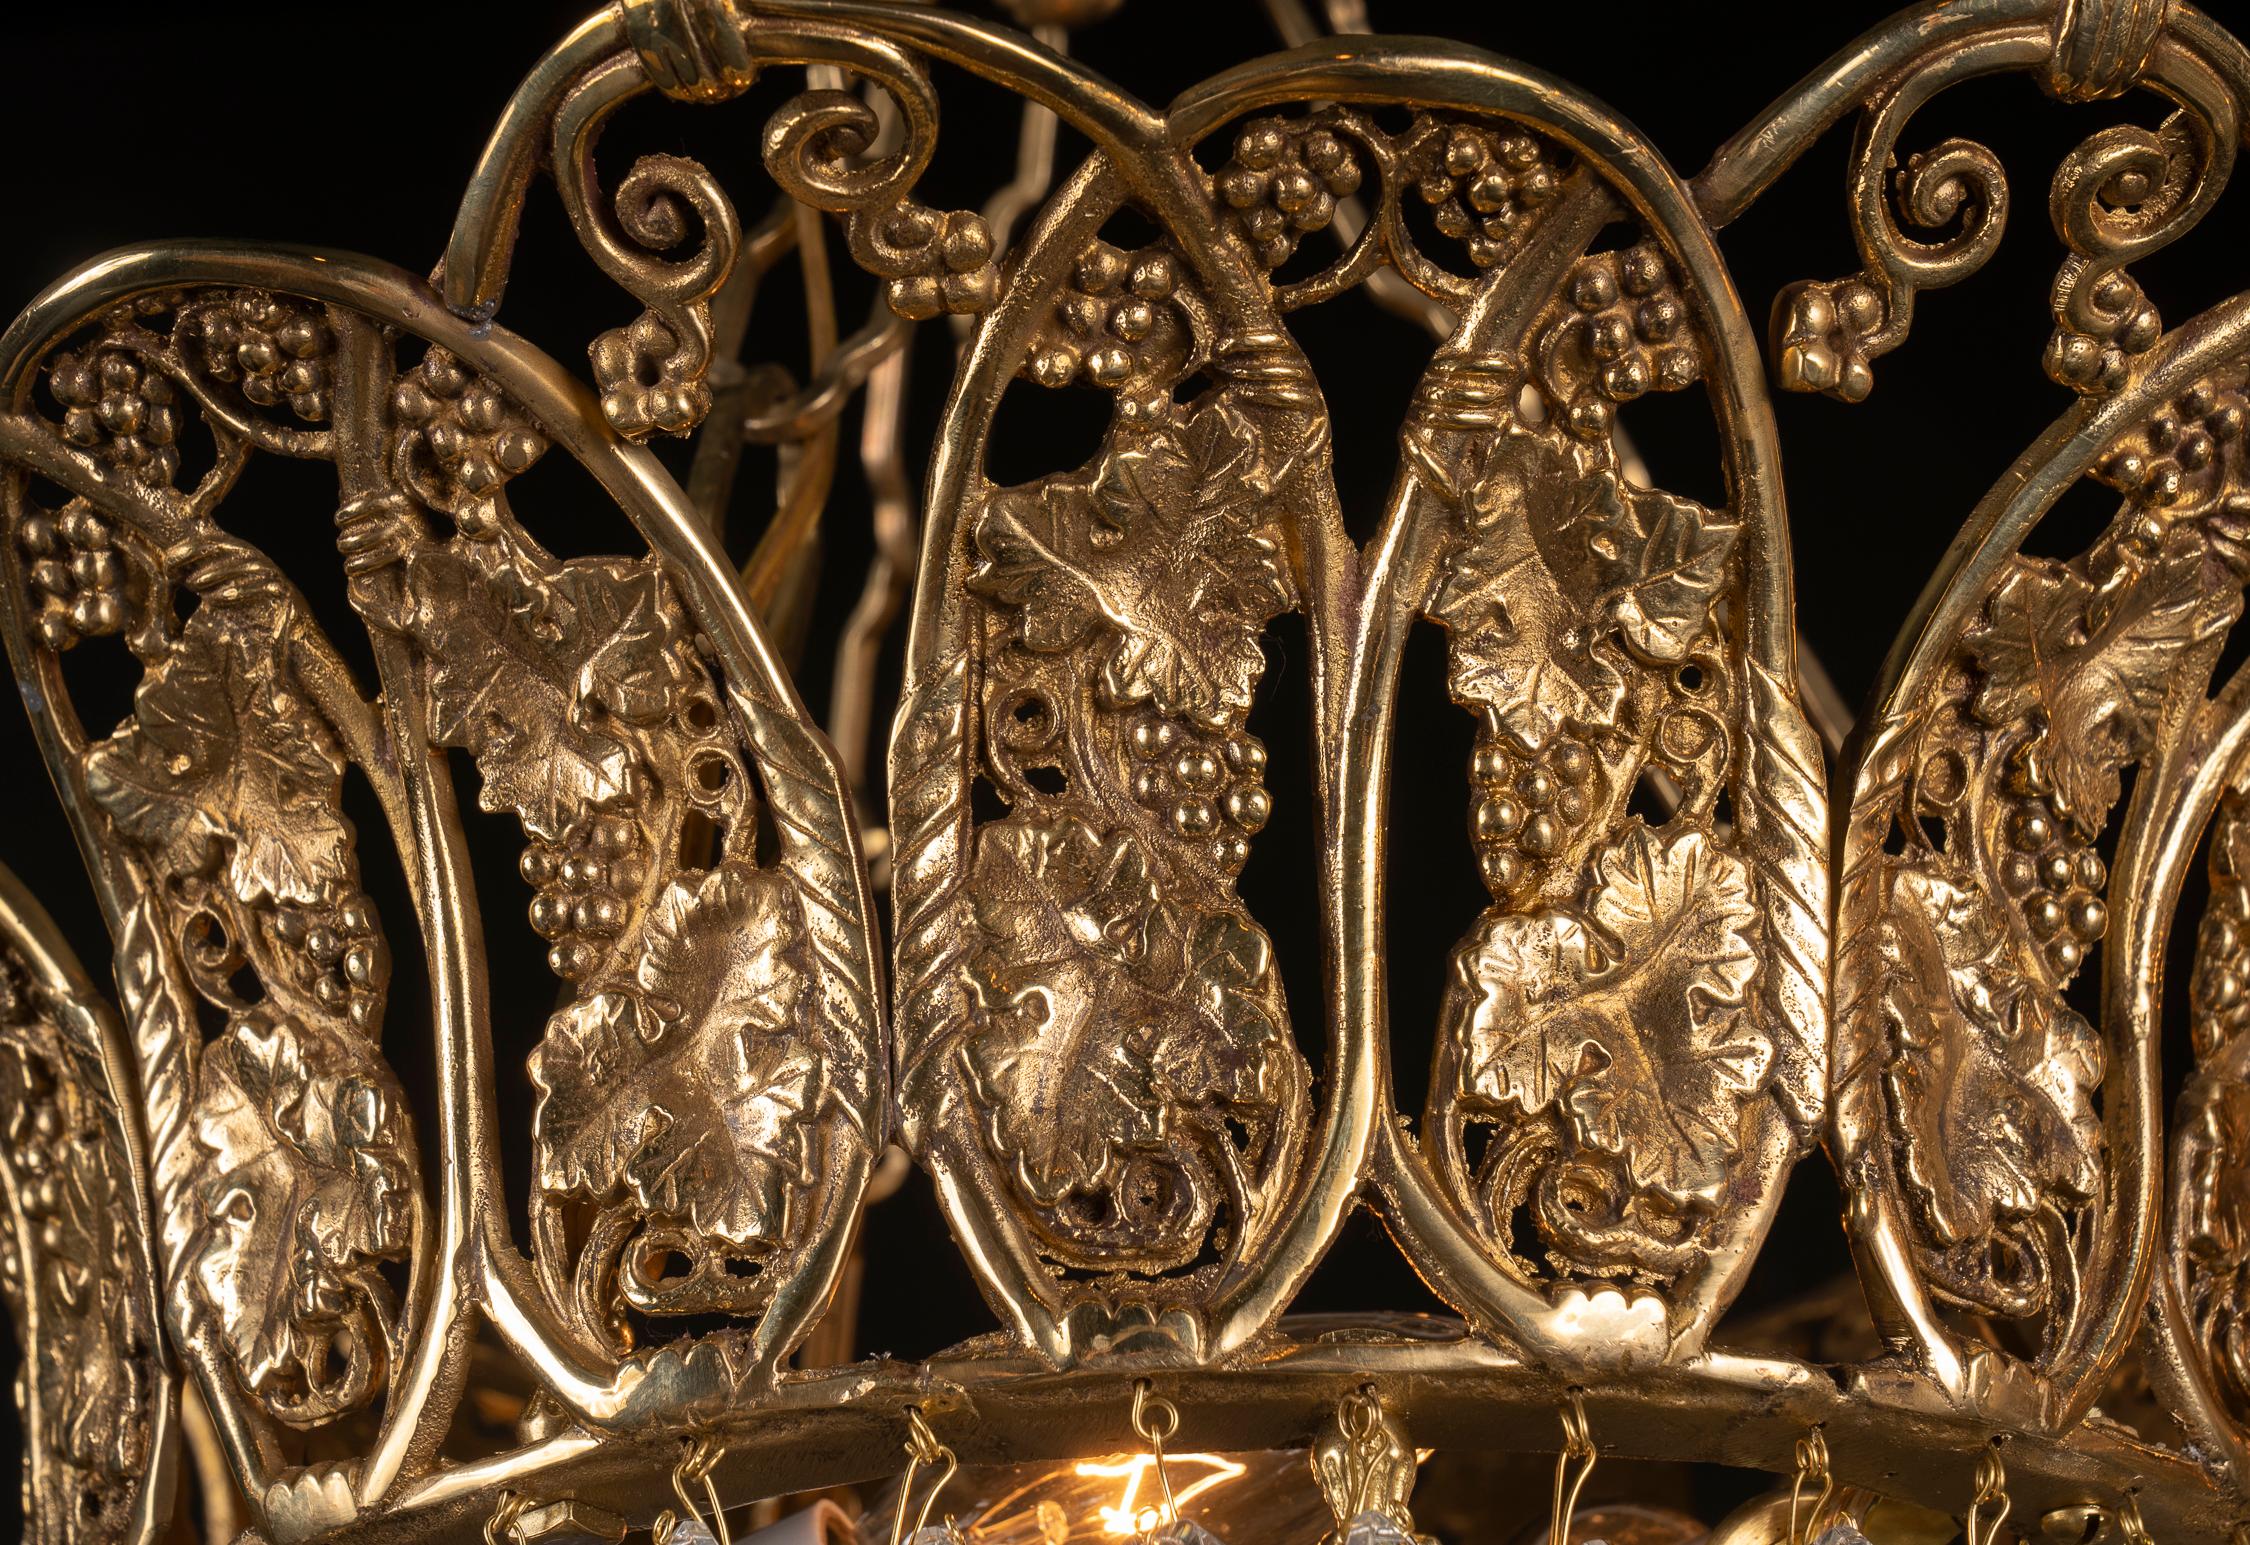 Dieser wunderschöne französische Kronleuchter aus dem frühen 20. Jahrhundert besticht durch seine fantastischen Kristallarbeiten und die kunstvoll verzierte Krone. Die Krone zeigt ein Traubenmotiv in Anspielung auf Bacchus, den Gott des Weines.